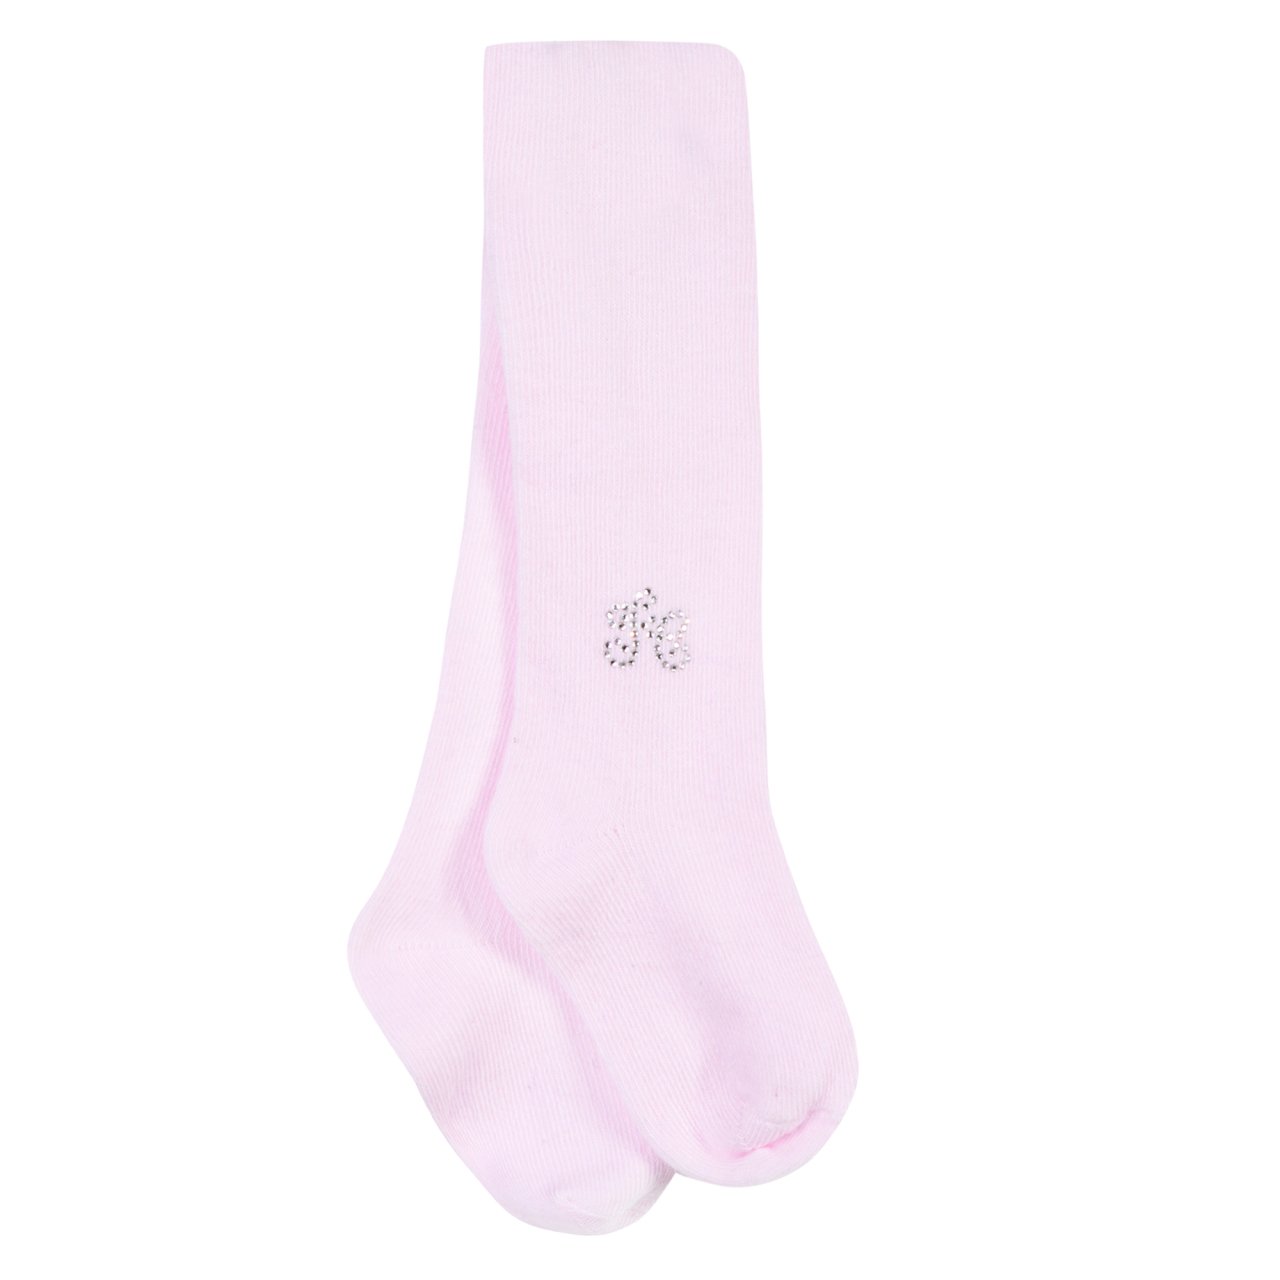 Kız Bebek Bileği Taşlı Külotlu Çorap